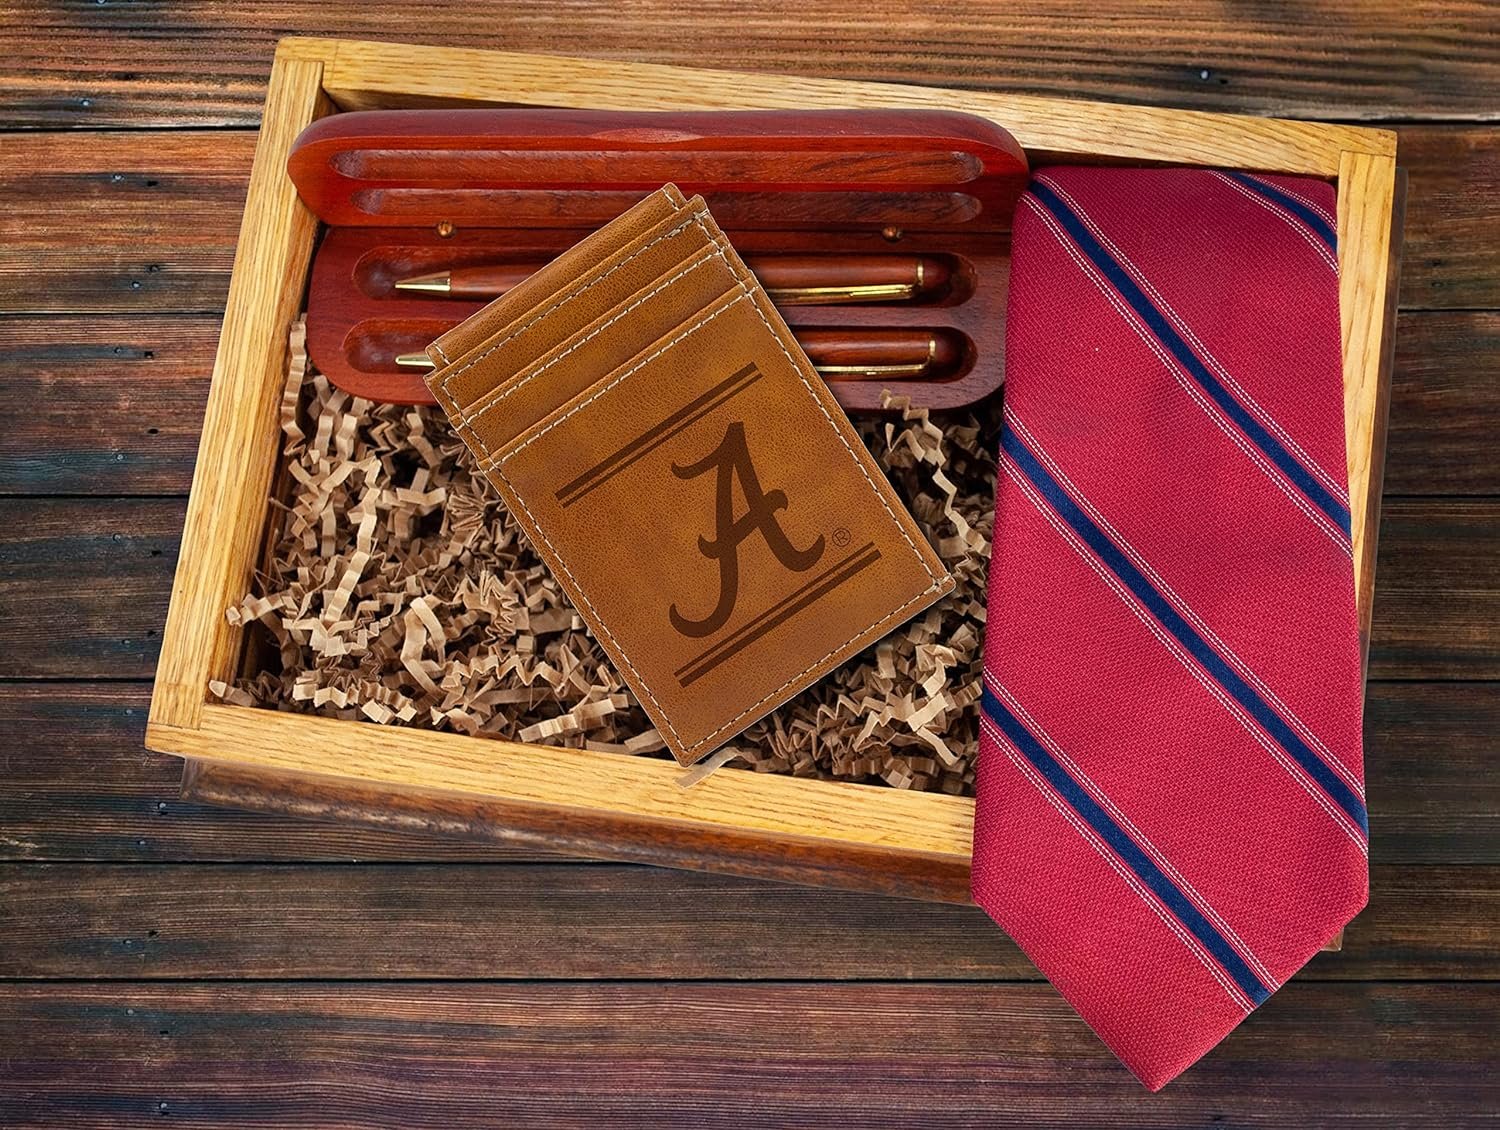 University of Alabama Crimson Tide Premium Brown Leather Wallet, Front Pocket Magnetic Money Clip, Laser Engraved, Vegan